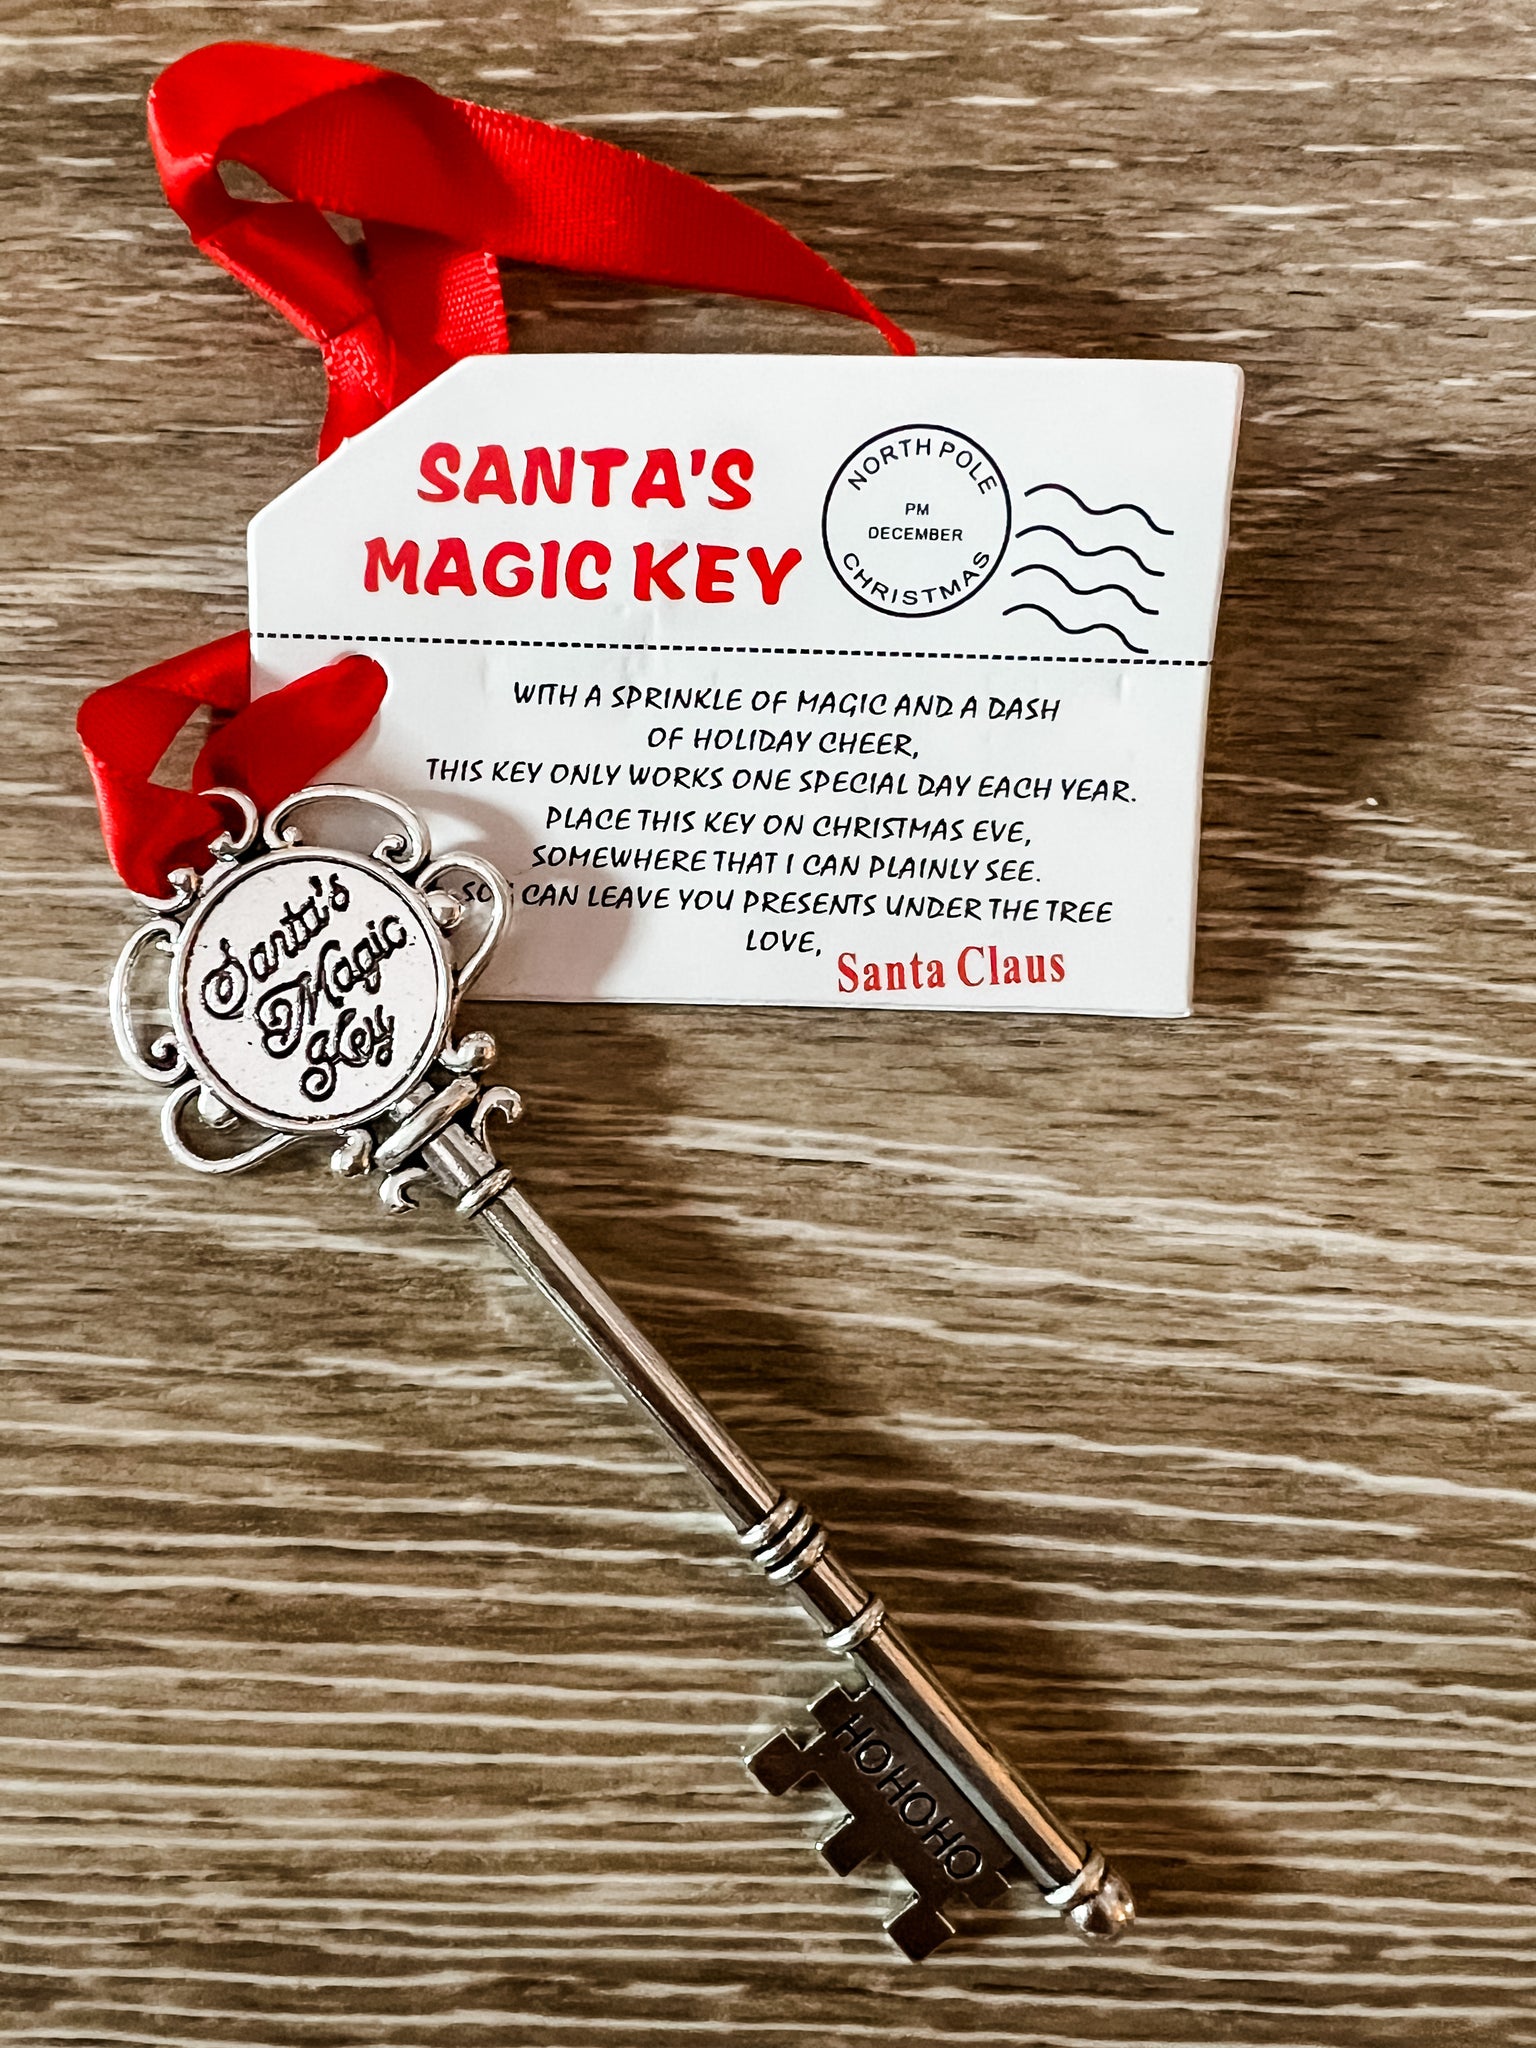 The Santa Key